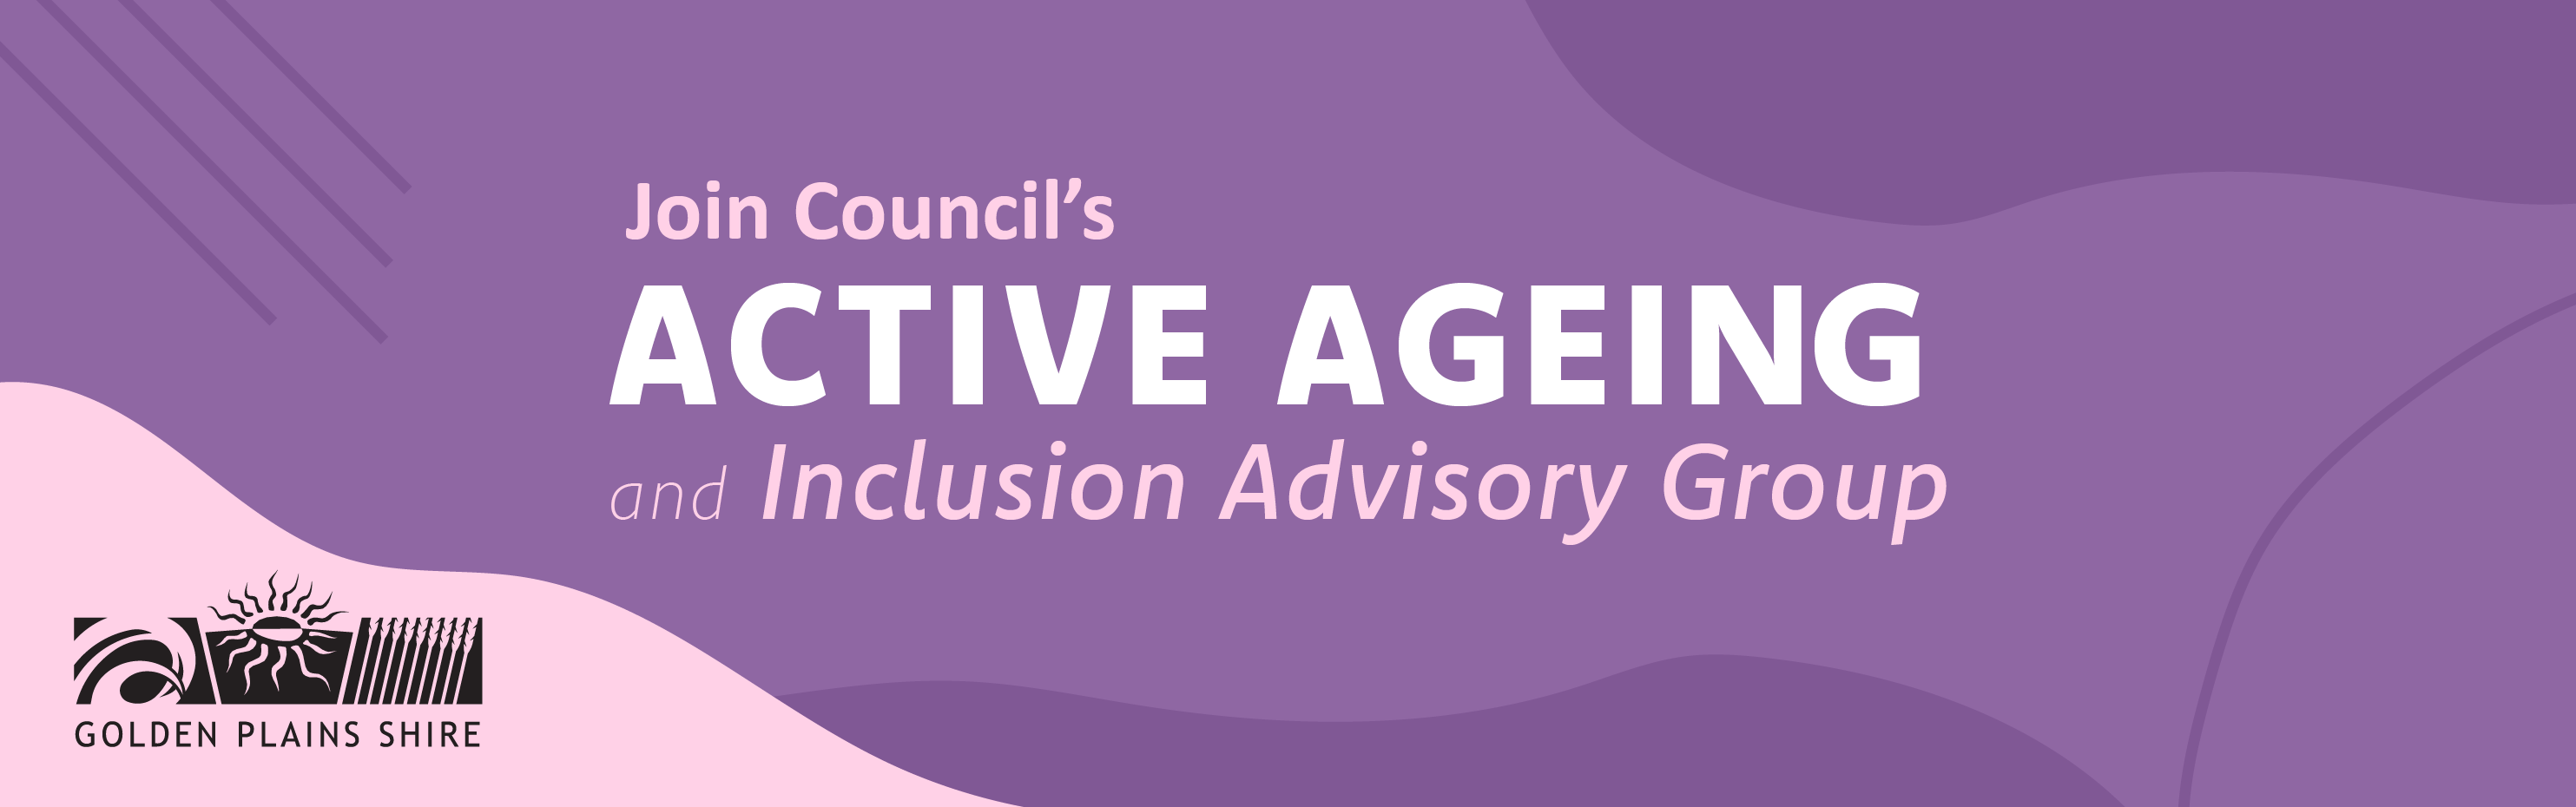 Advisory Group Banner